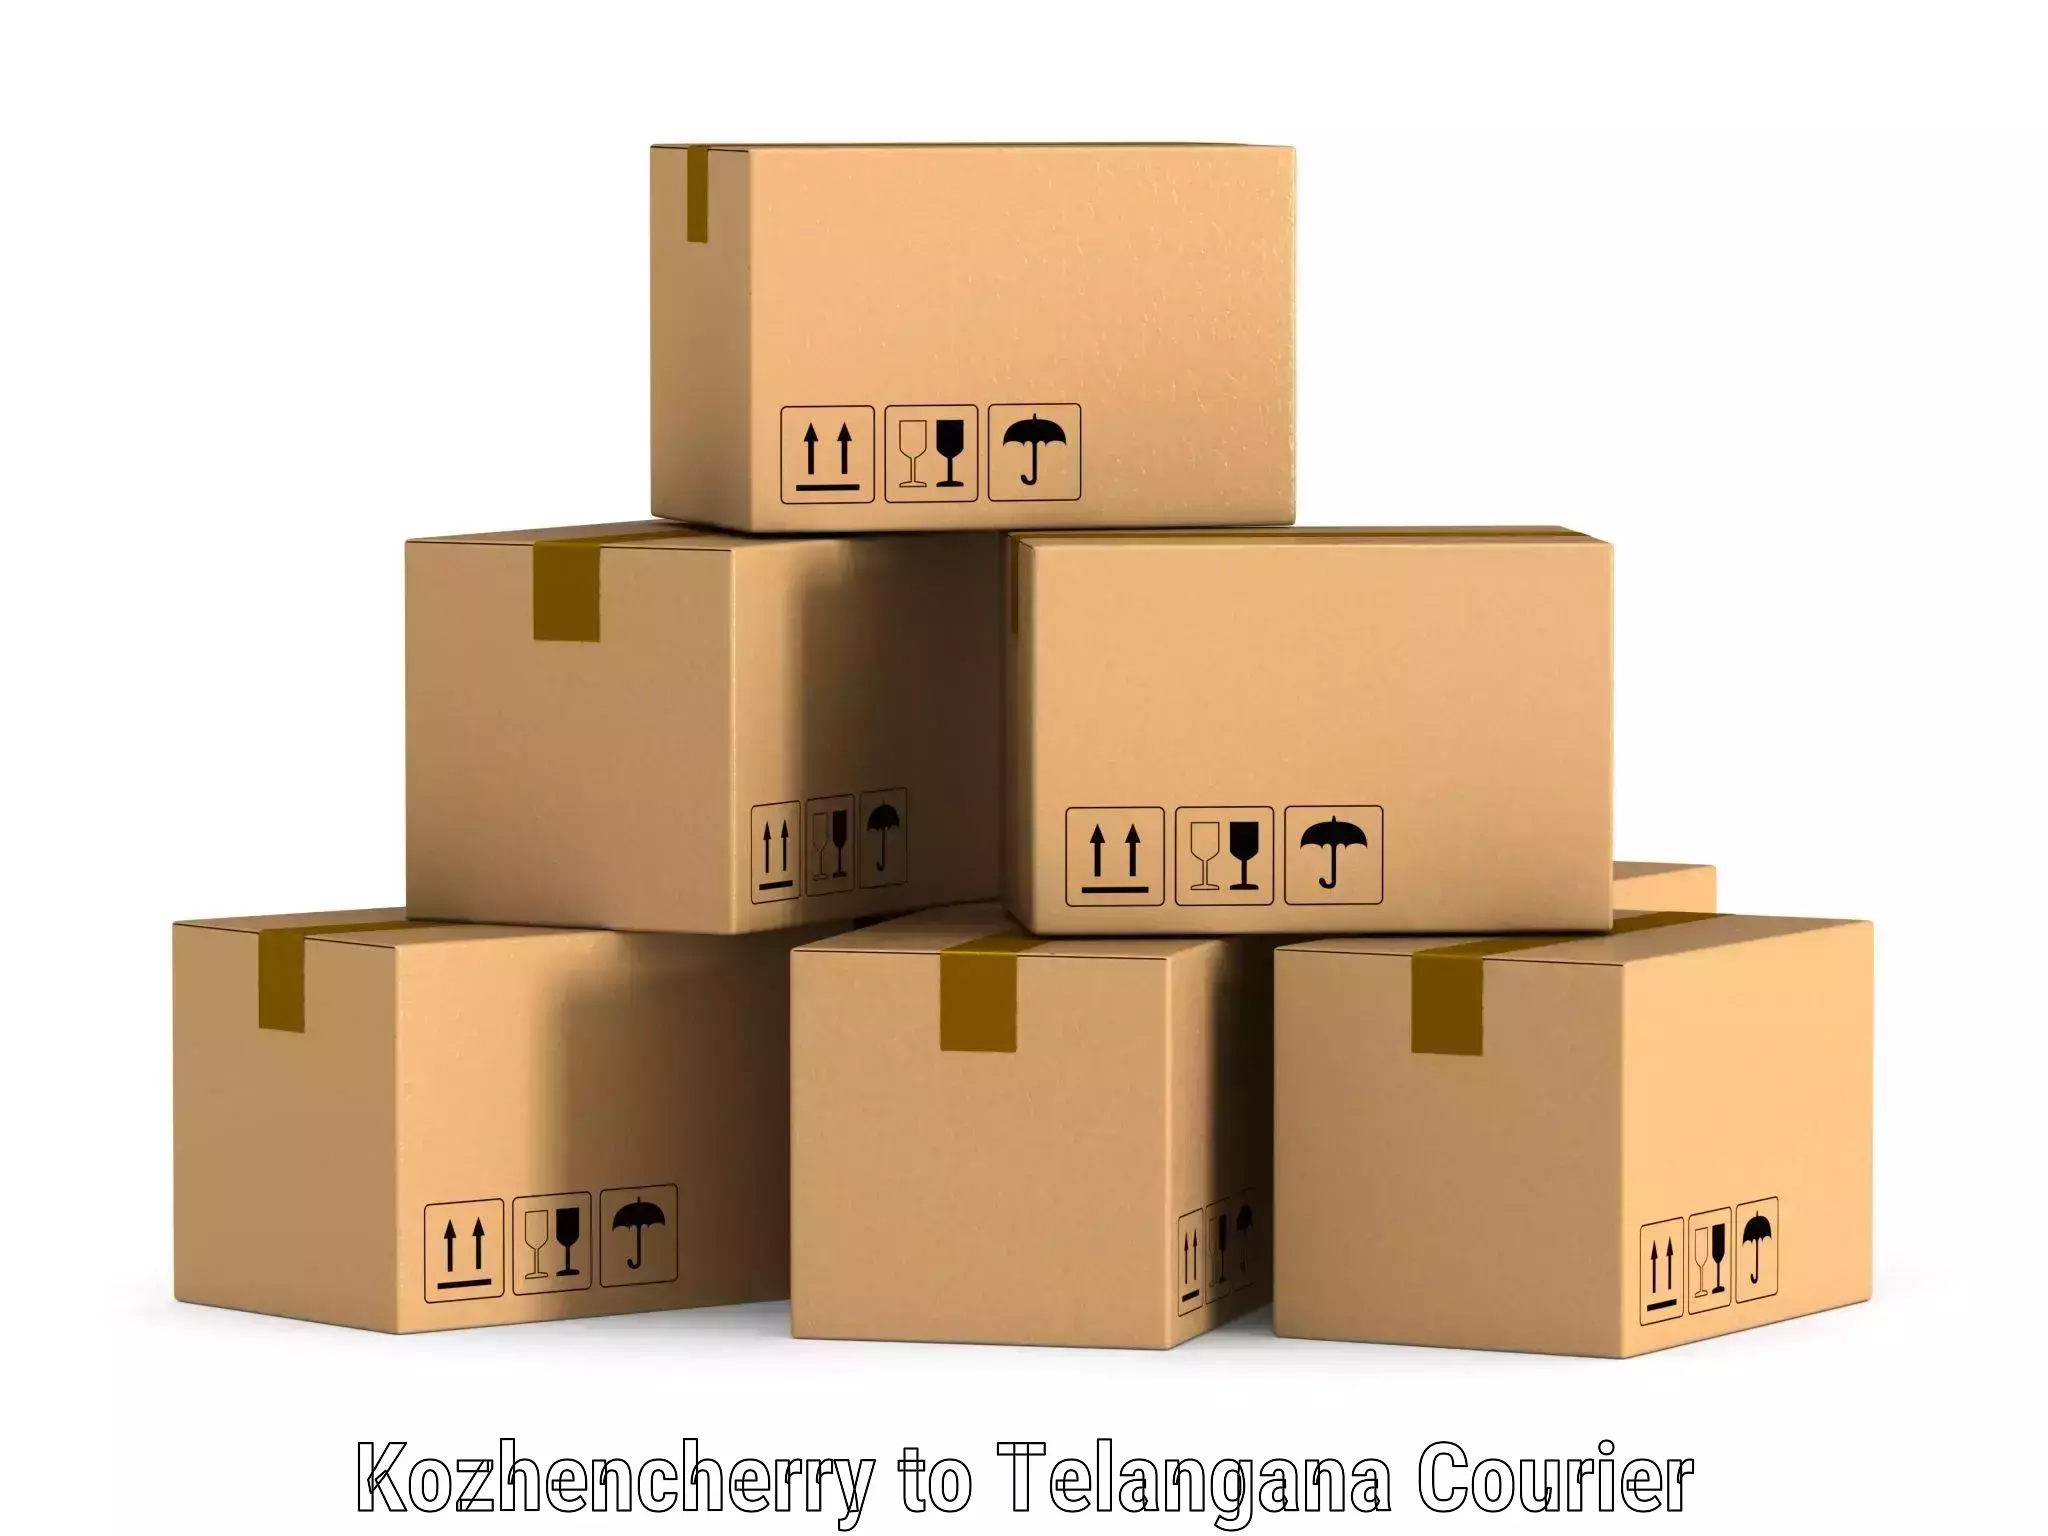 Online shipping calculator Kozhencherry to Gangadhara